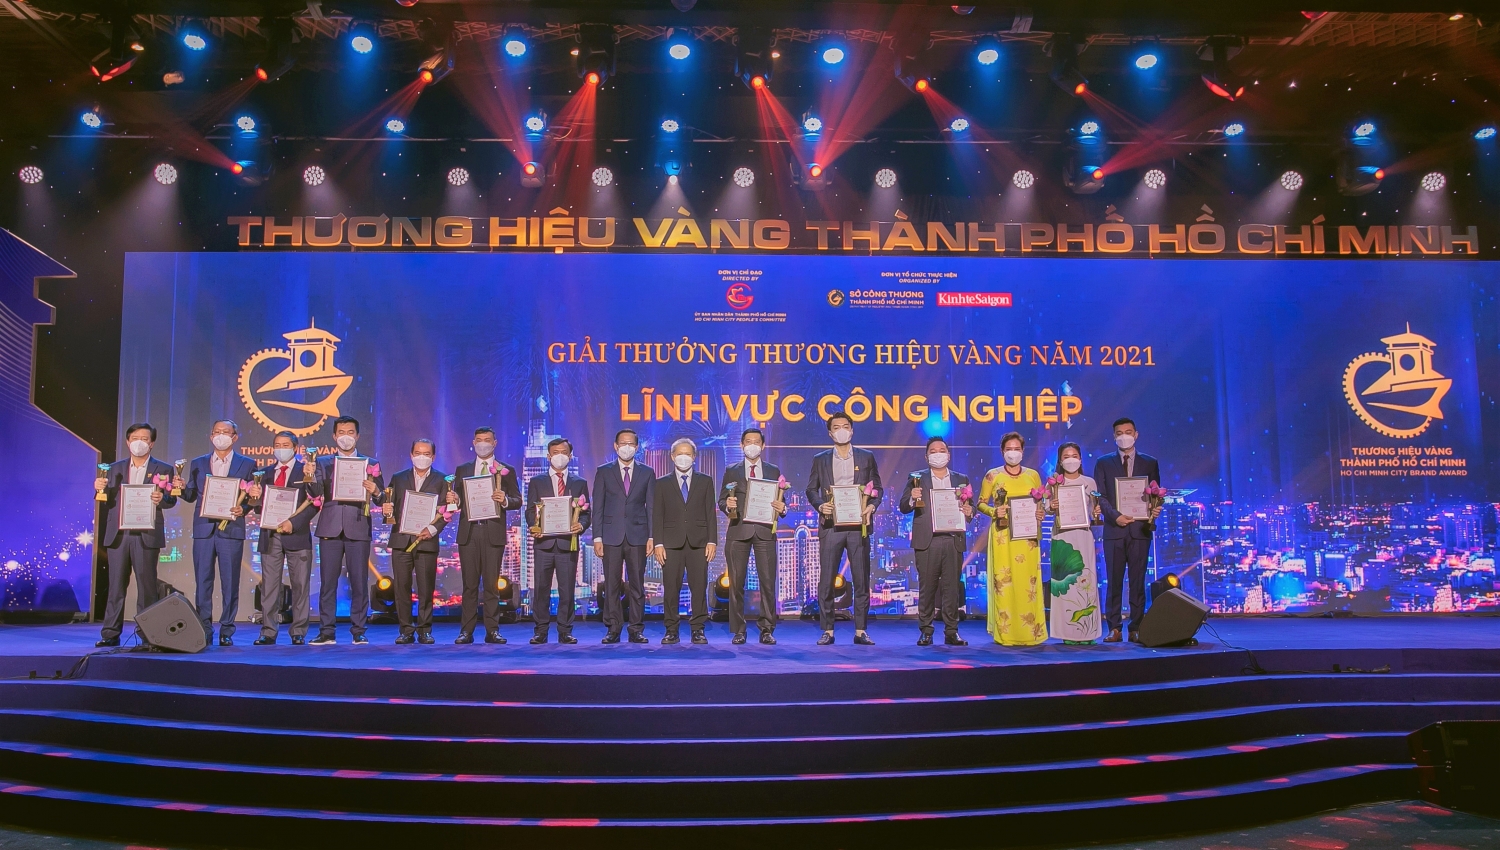 PVFCCo nhận vinh danh “Thương hiệu vàng Thành phố Hồ Chí Minh” năm 2021